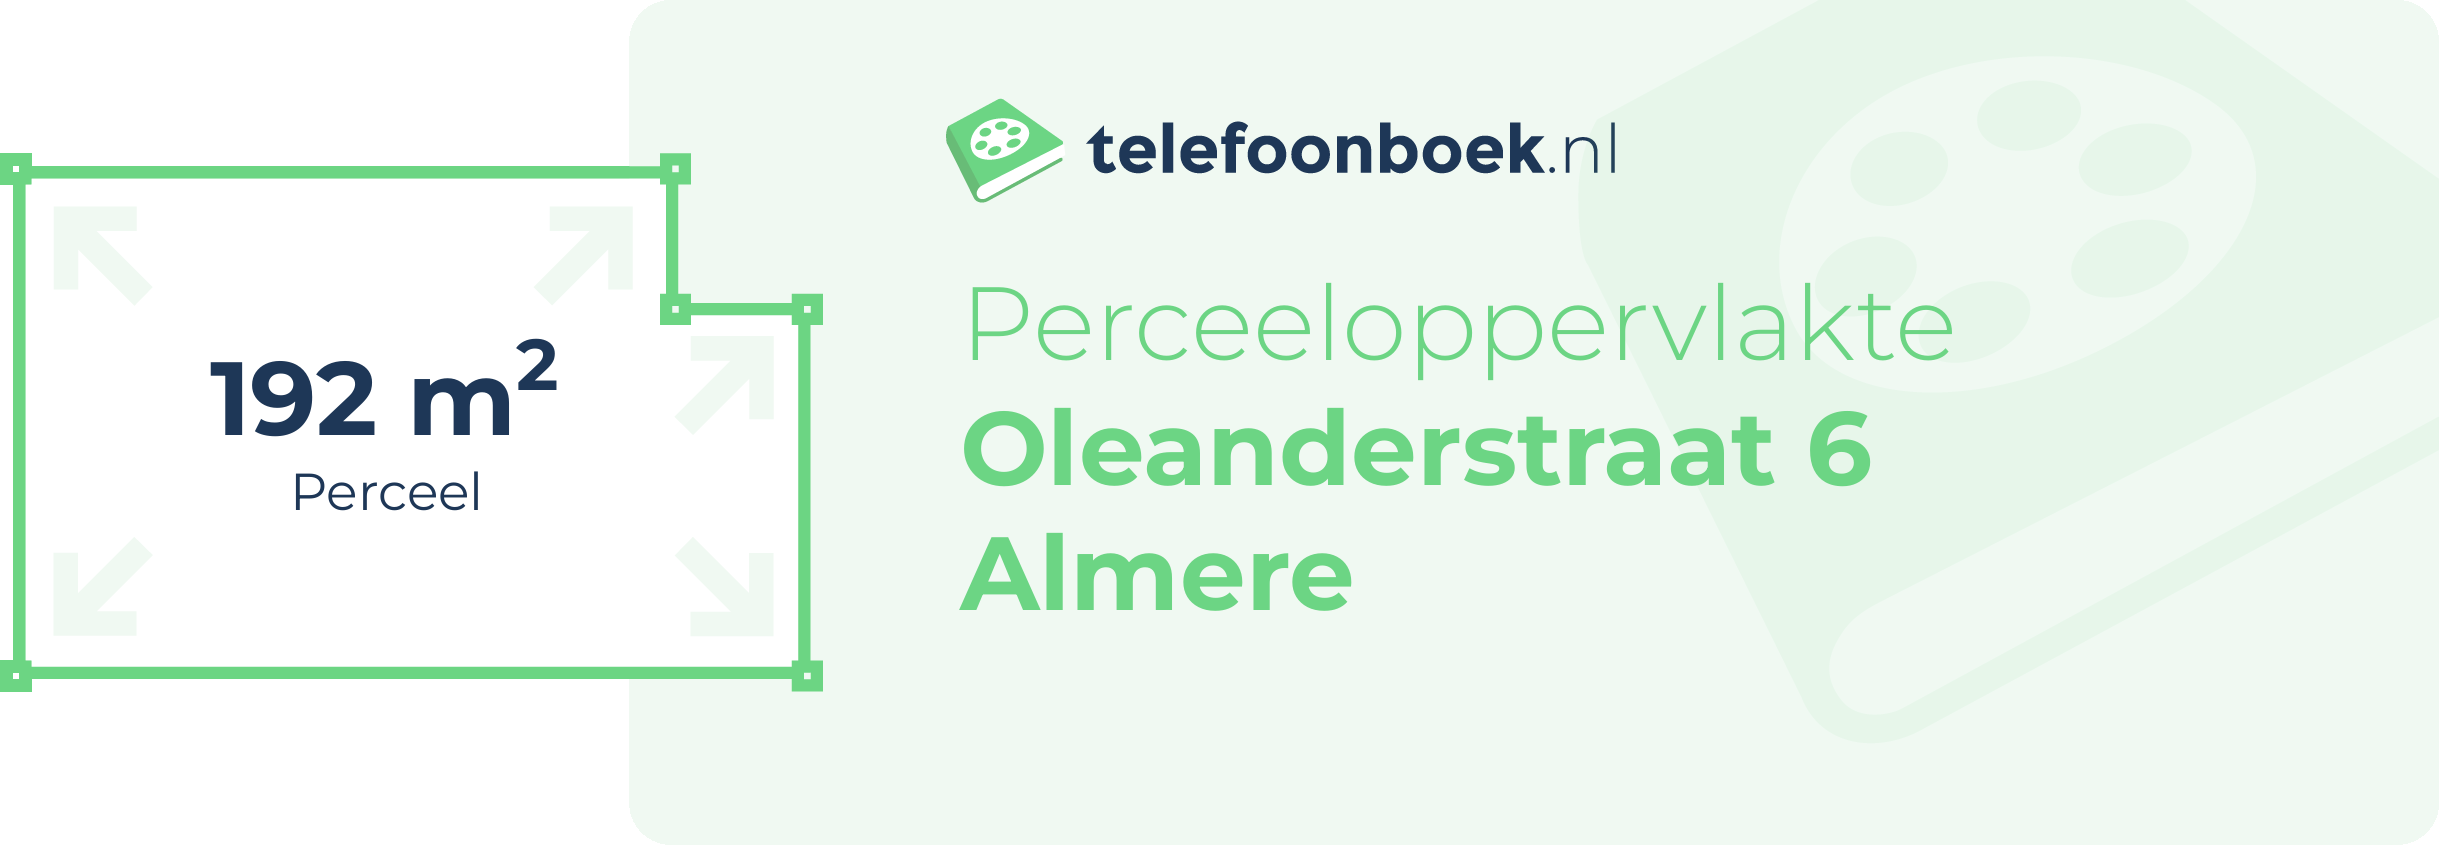 Perceeloppervlakte Oleanderstraat 6 Almere